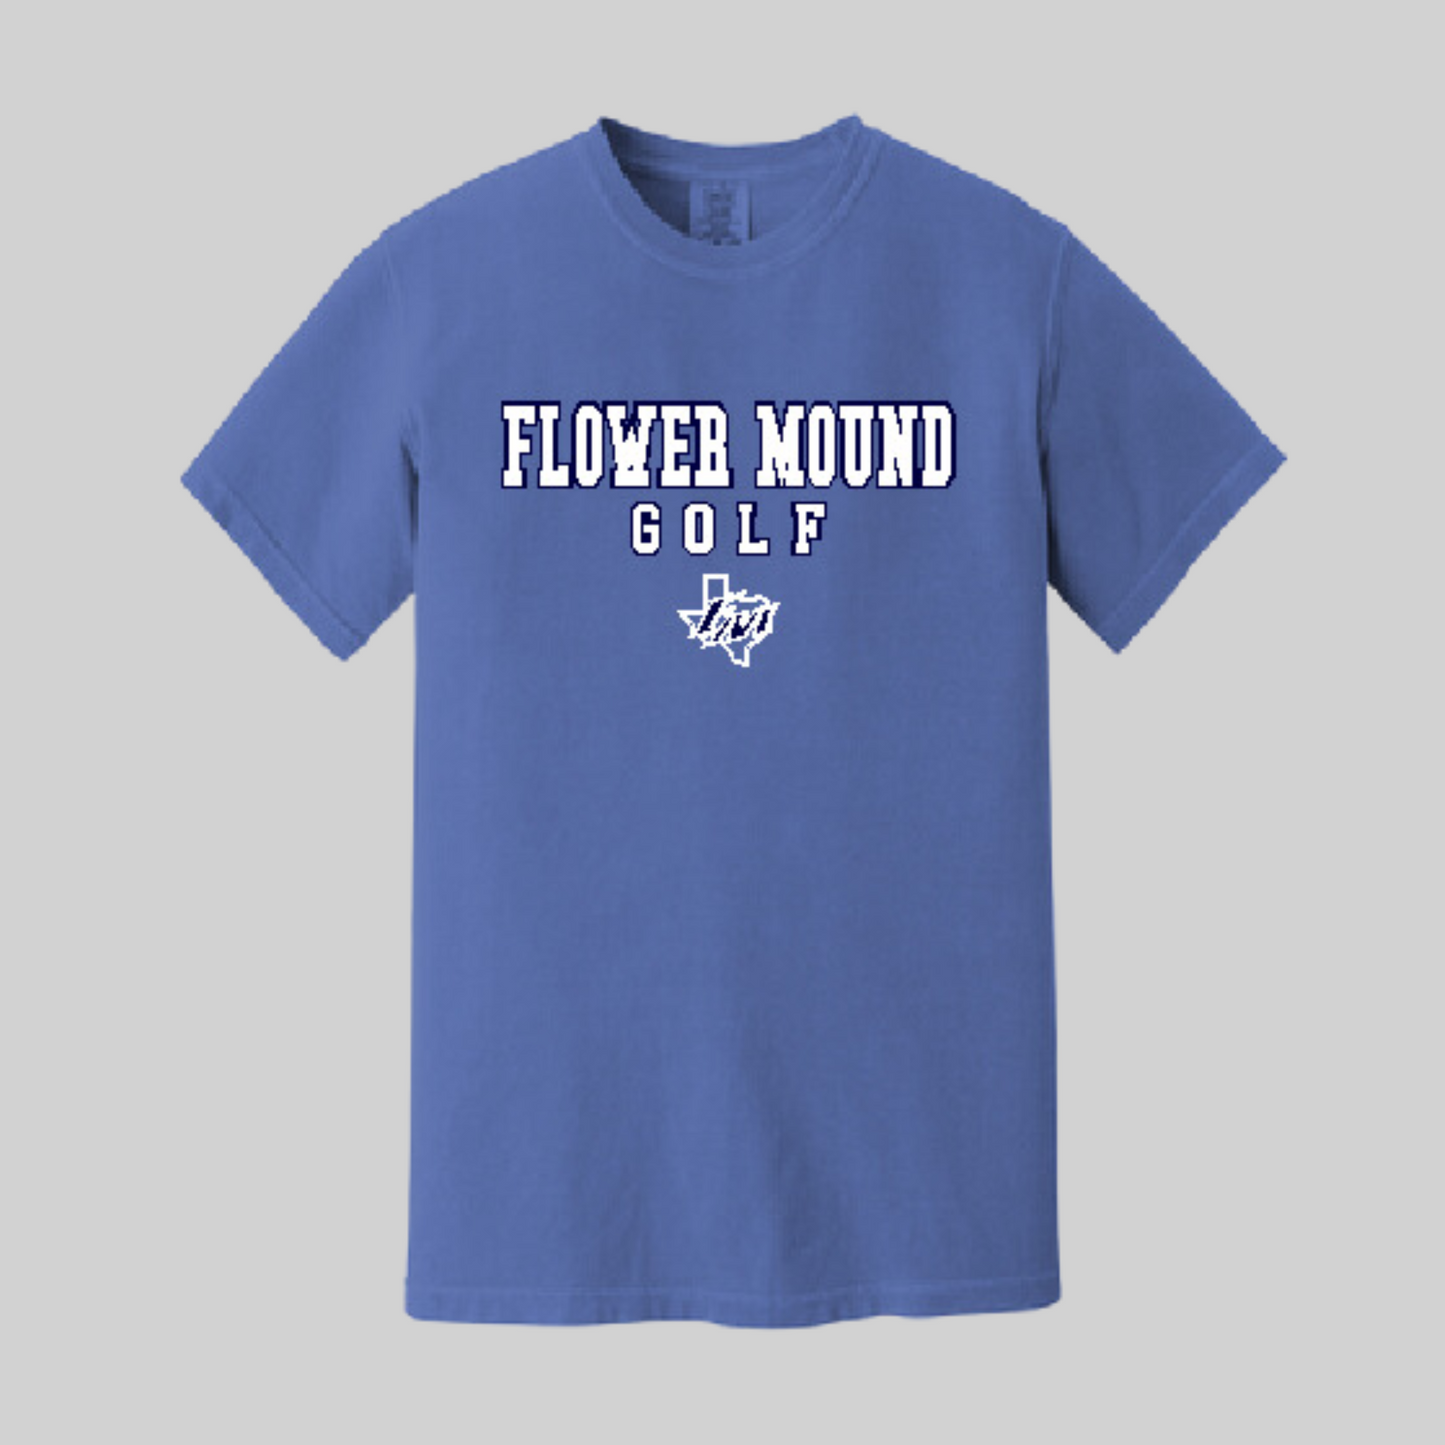 Flower Mound High School Golf 23-3